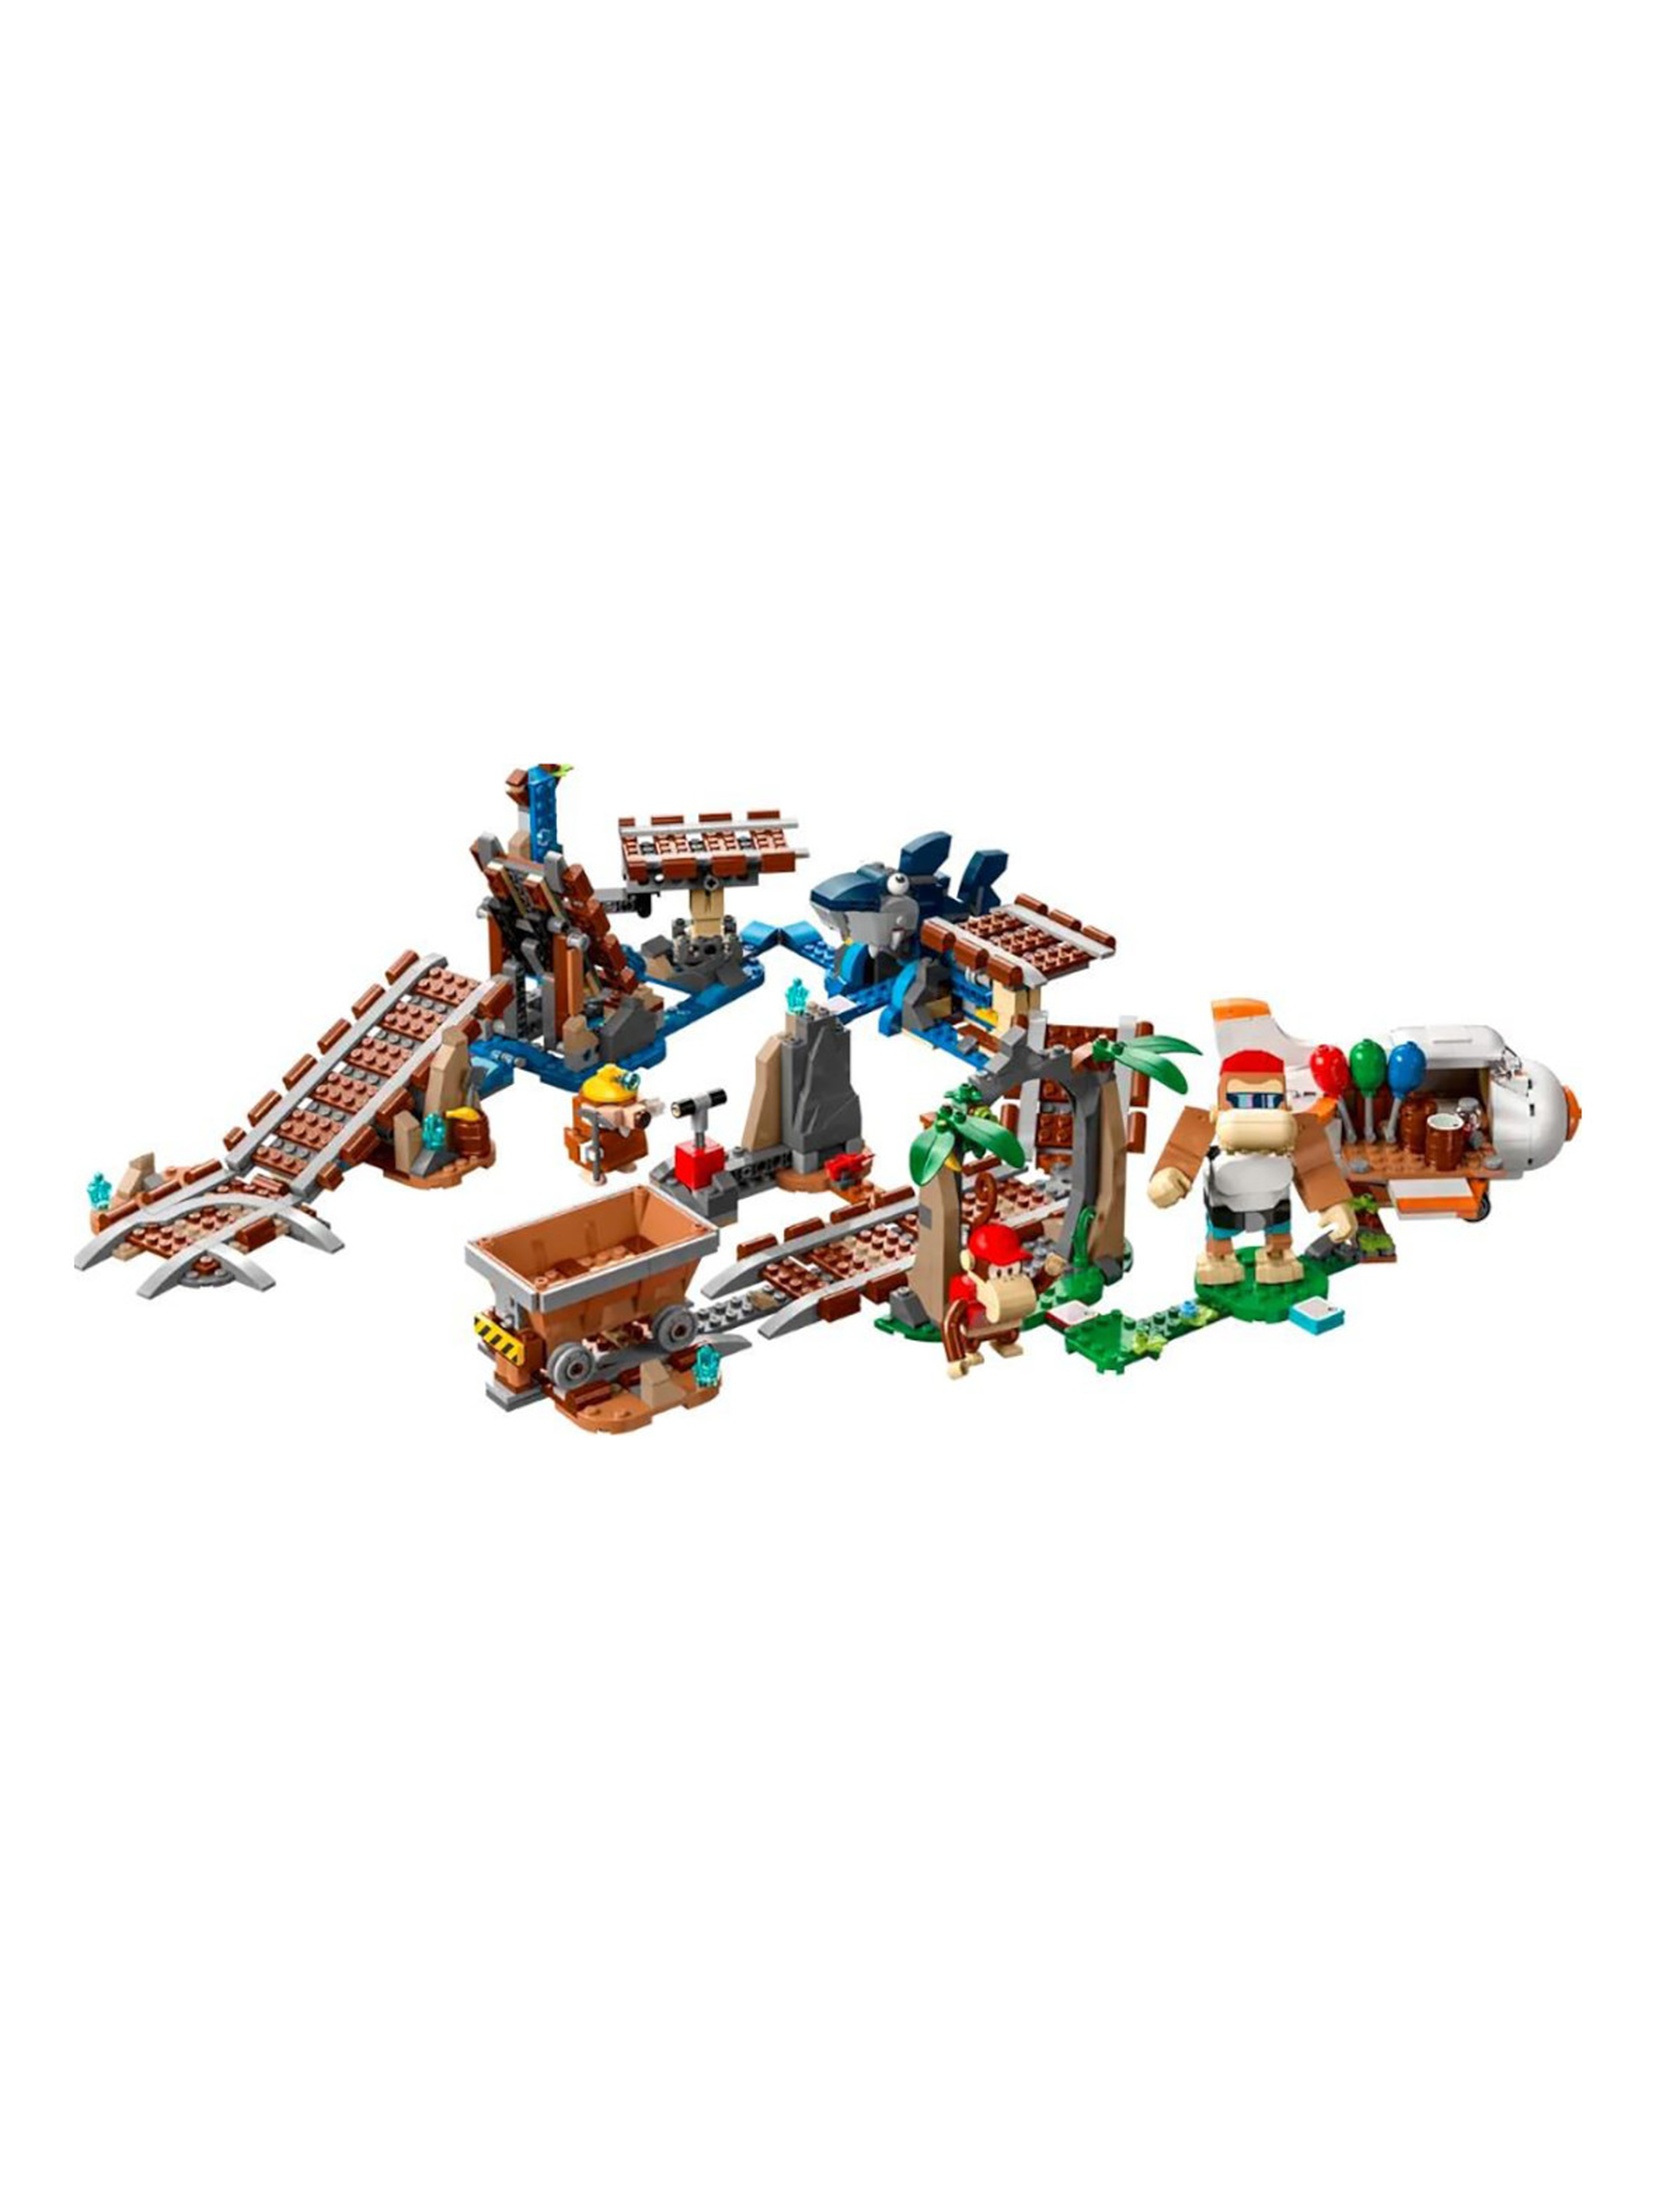 Klocki LEGO Super Mario 71425 Przejażdżka wagonikiem Diddy Konga - zestaw rozszerzający - 1157 elementów, wiek 8 +